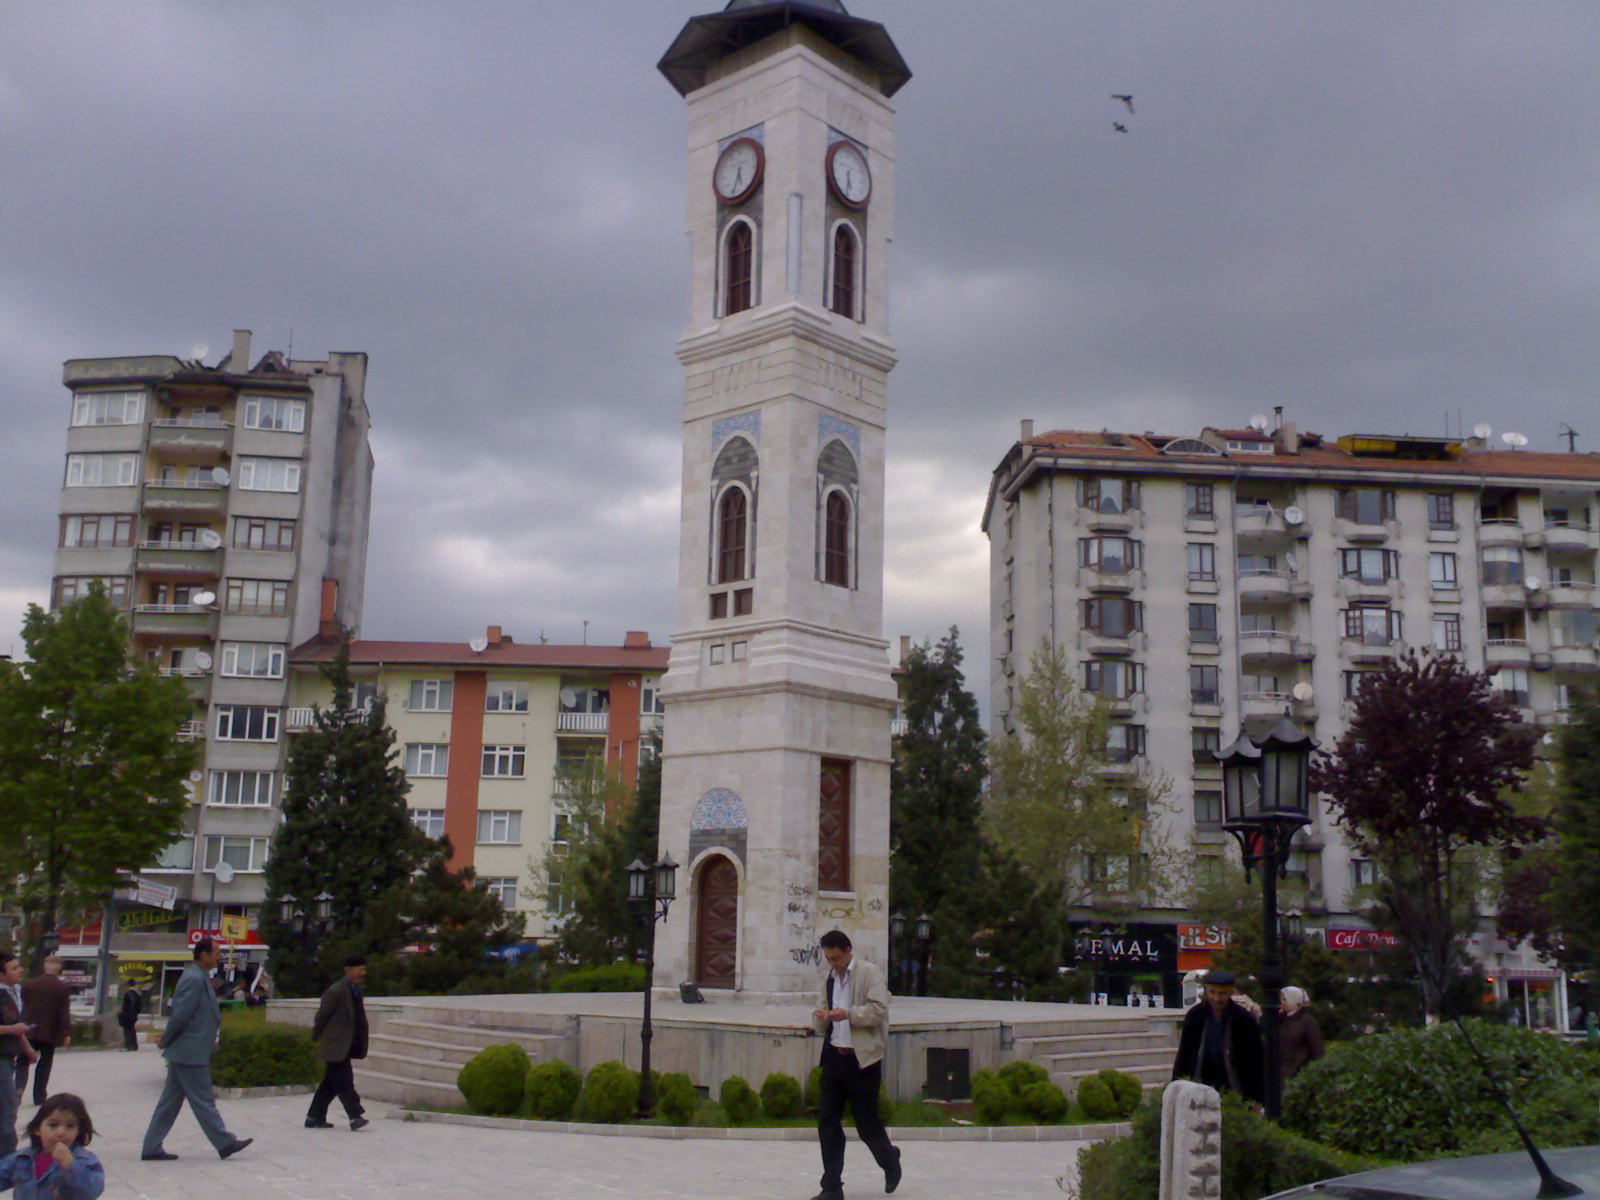 kutahya clock tower 1600 x 1200